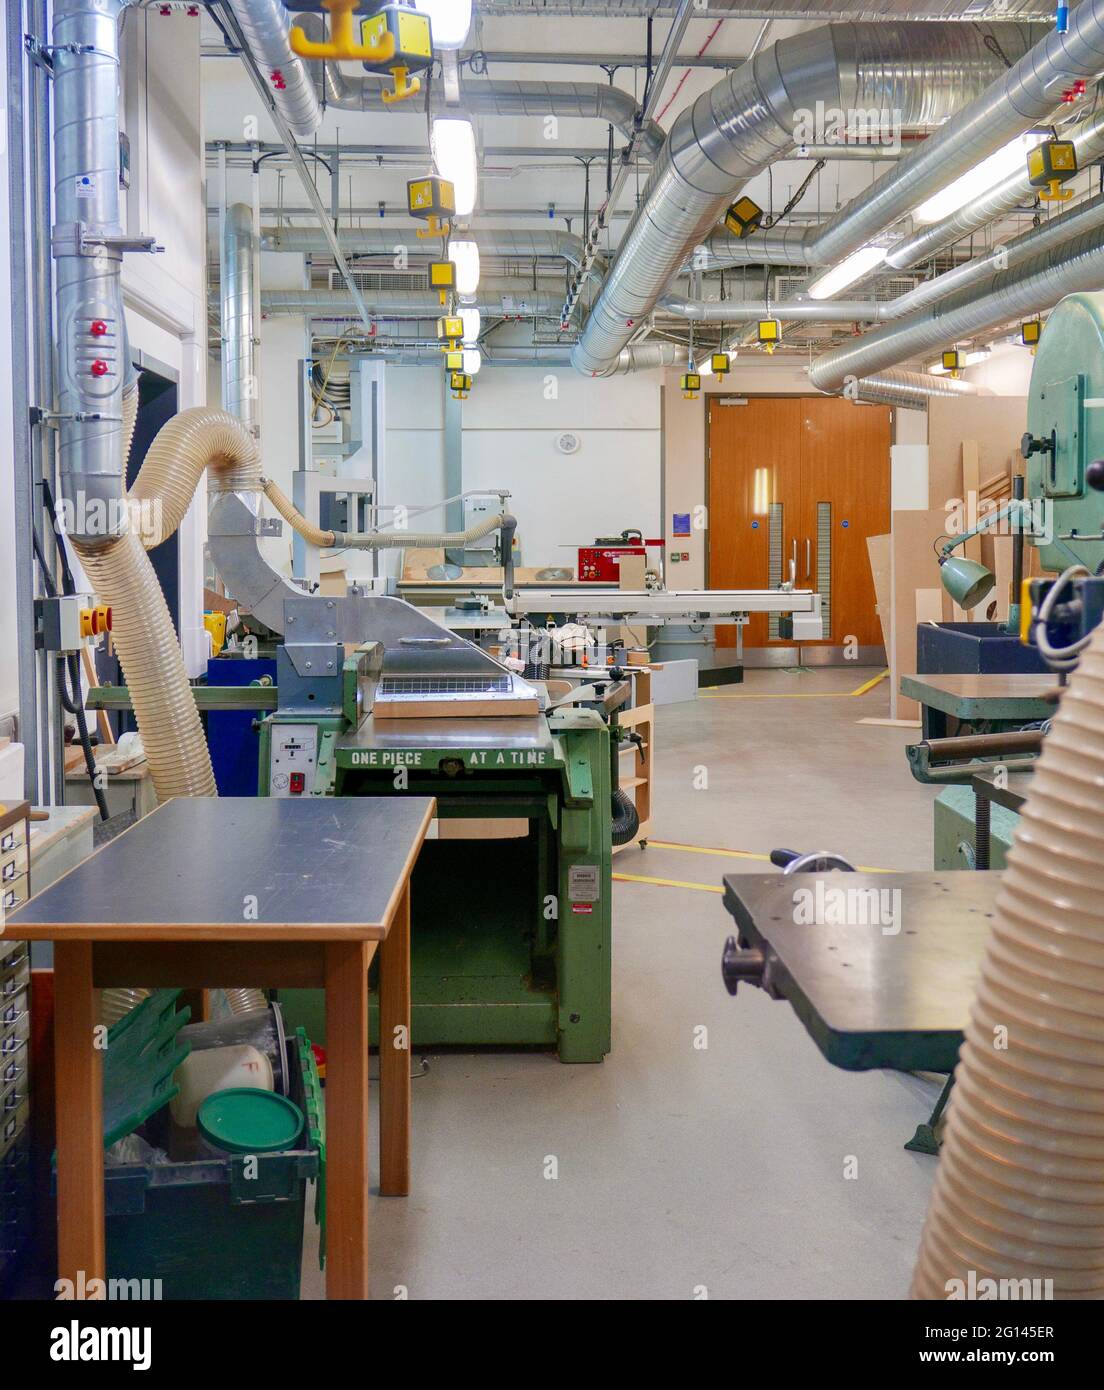 Taller de tecnología de diseño de materiales y madera en la Universidad de Middlesex, Londres, con bancos de trabajo y maquinaria. Foto de stock